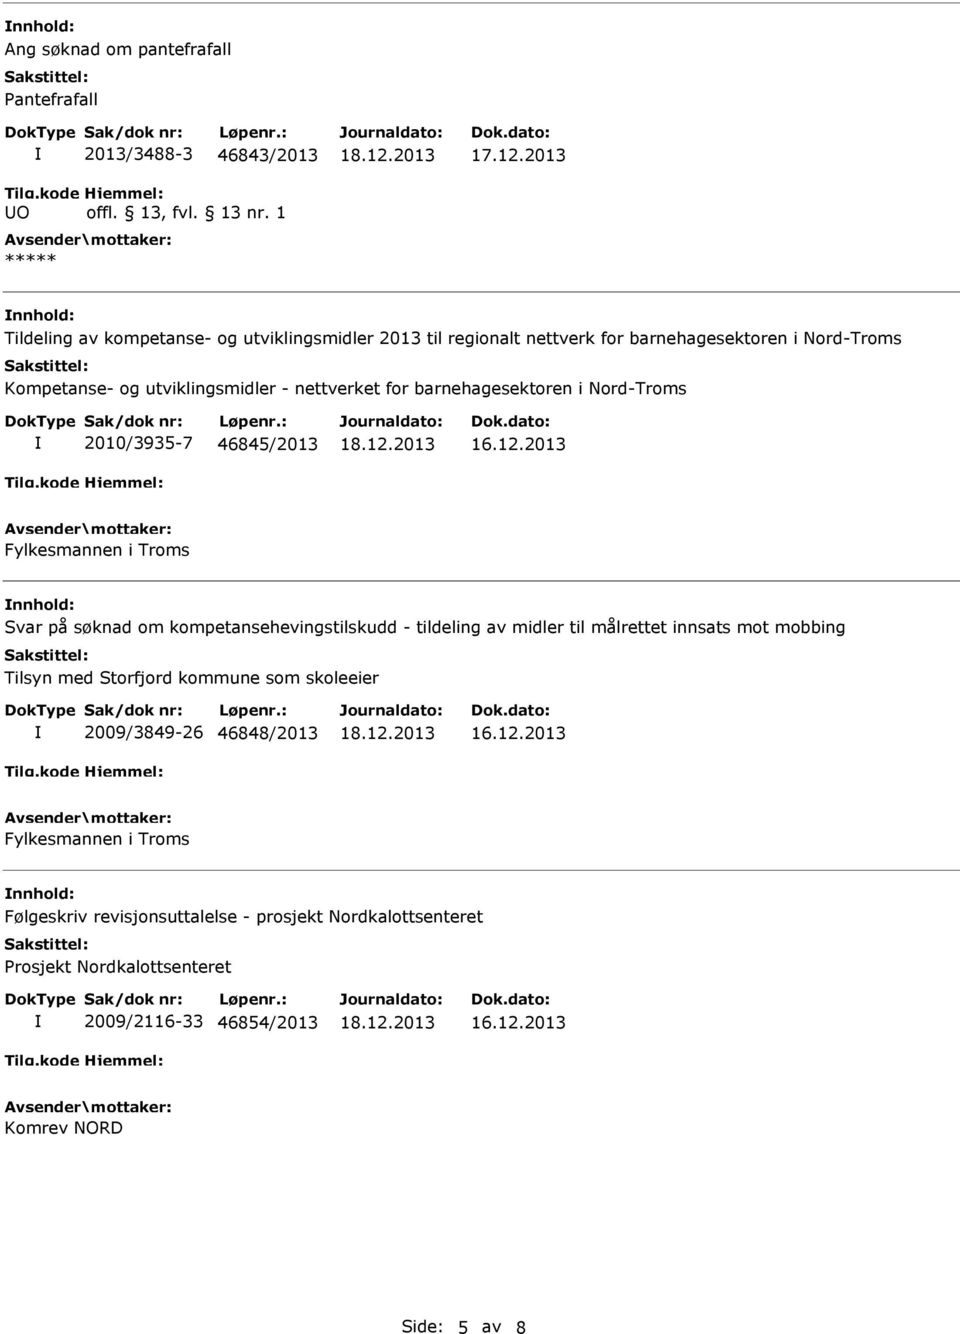 Svar på søknad om kompetansehevingstilskudd - tildeling av midler til målrettet innsats mot mobbing Tilsyn med Storfjord kommune som skoleeier 2009/3849-26